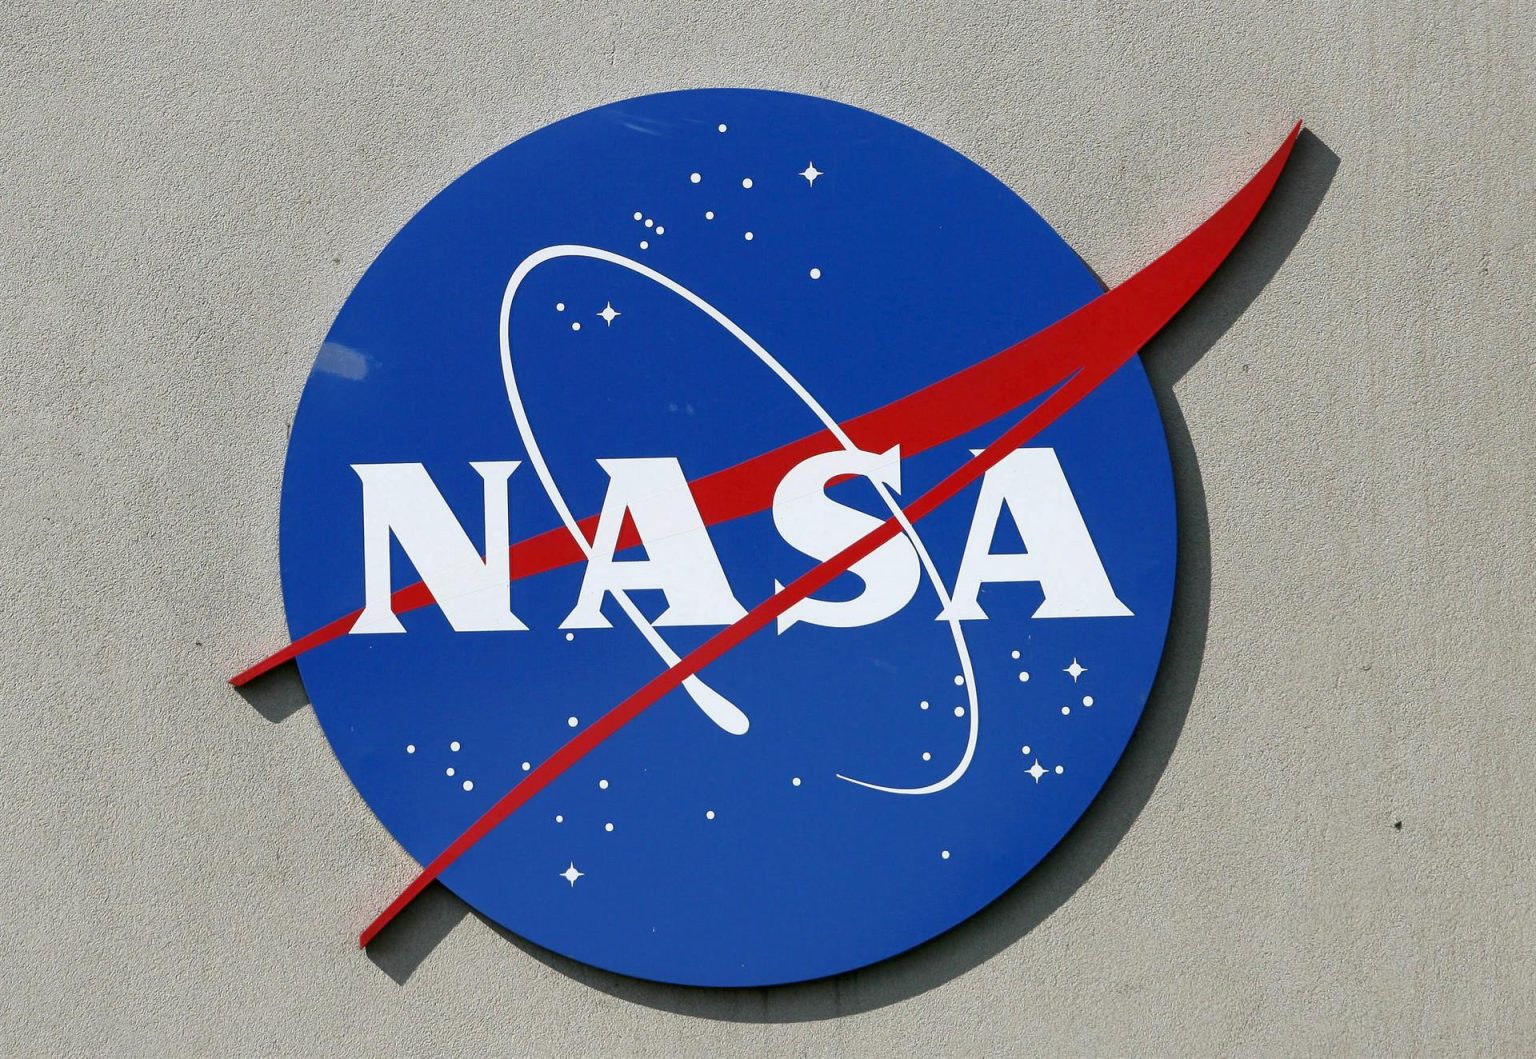 Un logo de la NASA se aprecia en las afueras del Centro Espacial Johnson en Houston (EEUU), imagen de archivo. EFE/AARON M. SPRECHER